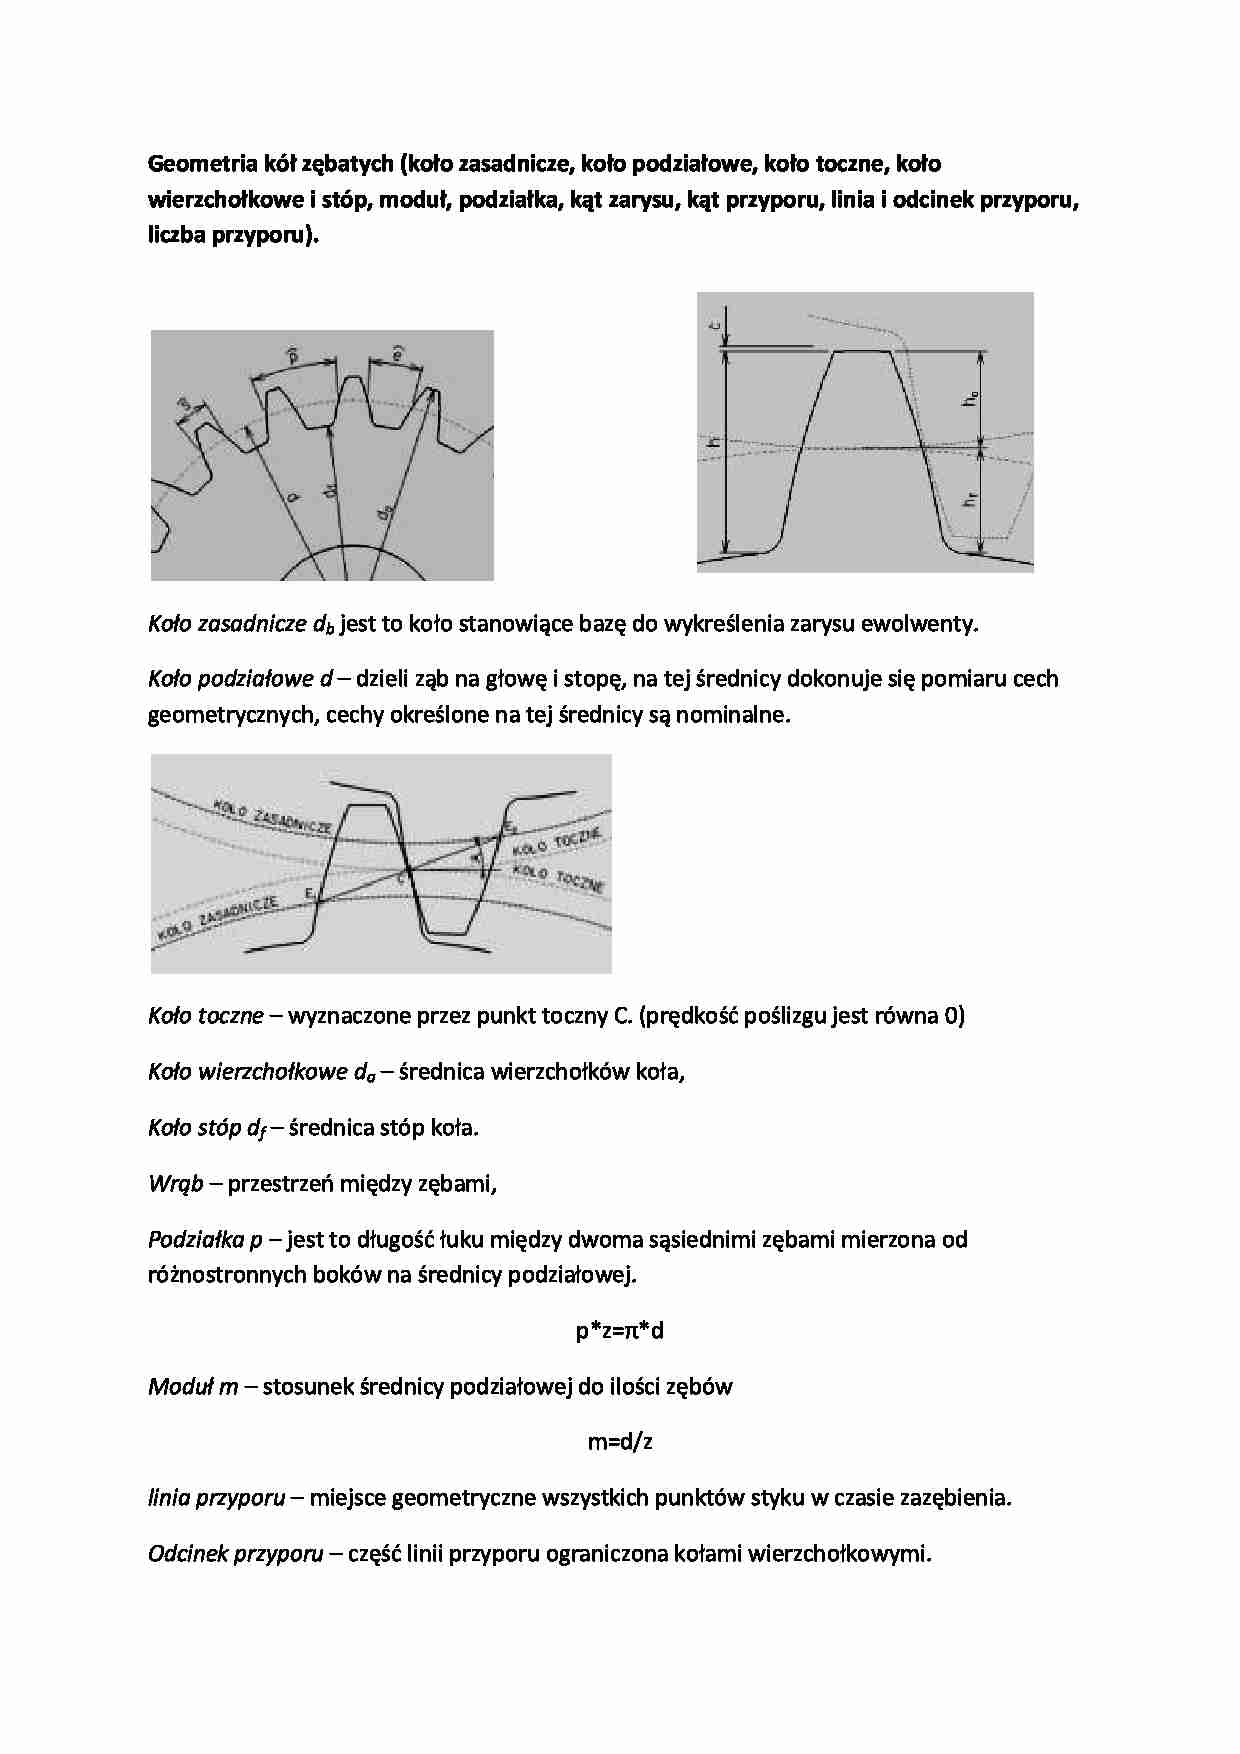 Geometria kół zębatych - wykład - strona 1